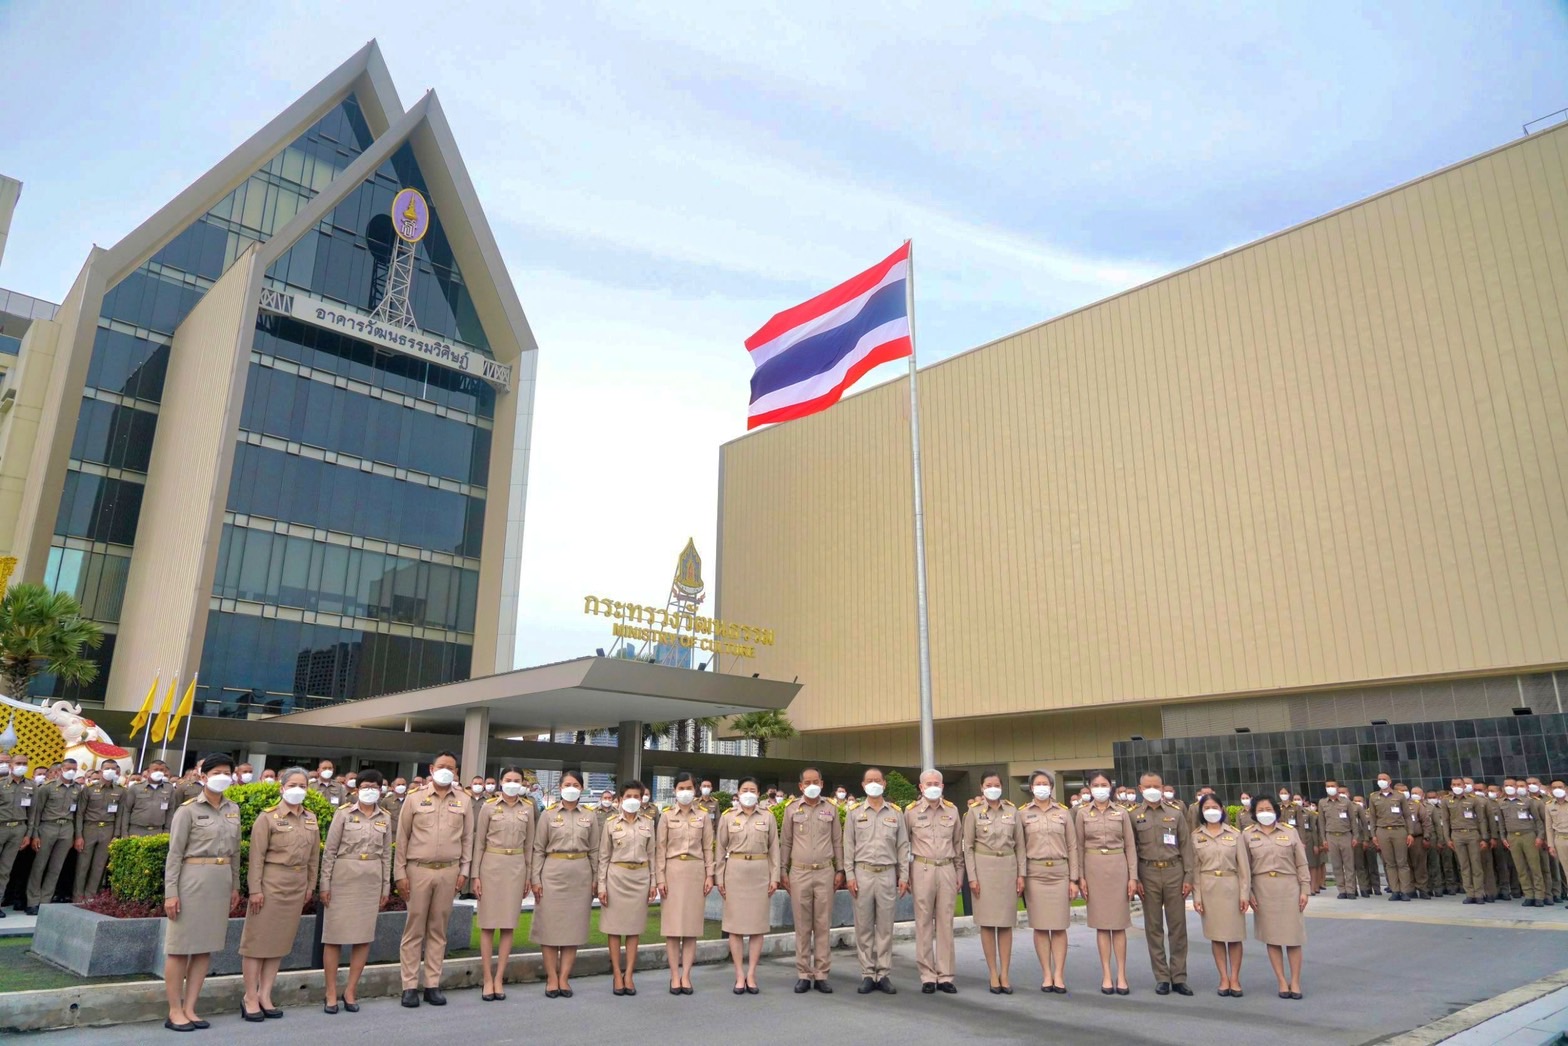 ปลัดกระทรวงวัฒนธรรม เป็นประธานพิธีประดับธงชาติและเคารพธงชาติ เนื่องในวันพระราชทานธงชาติไทย